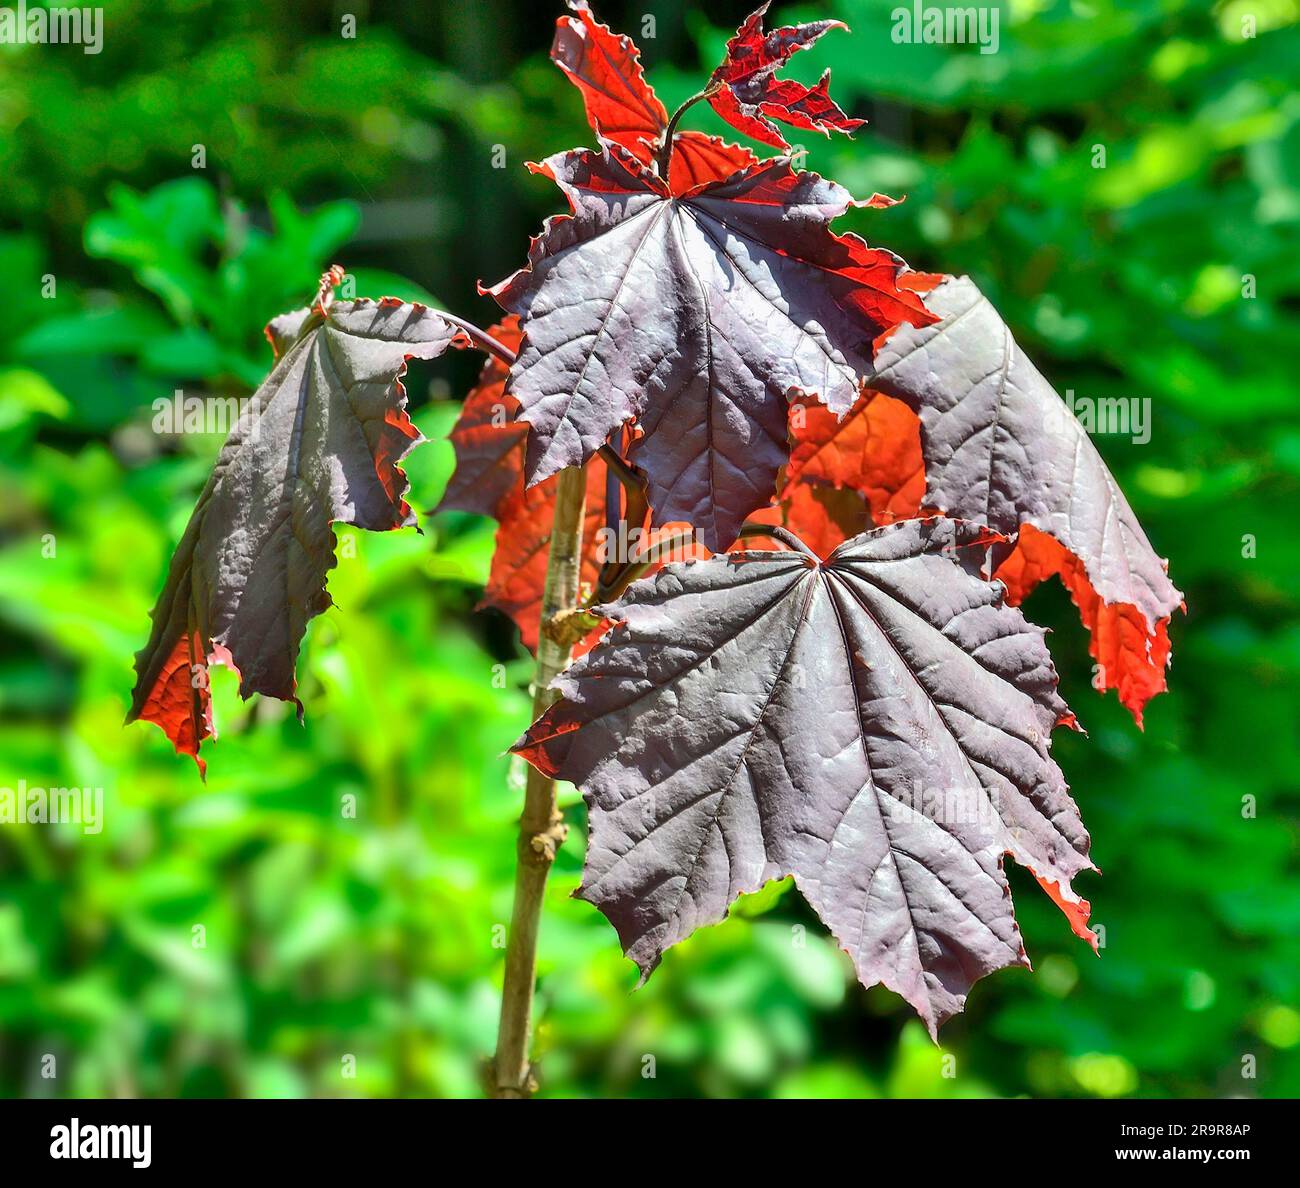 Branche de Marple ou Acer platanoides Royal Red avec des feuilles rouges de près. Magnifique arbre décoratif pour parc, ou jardin paysage conception. Arbre Marple W Banque D'Images